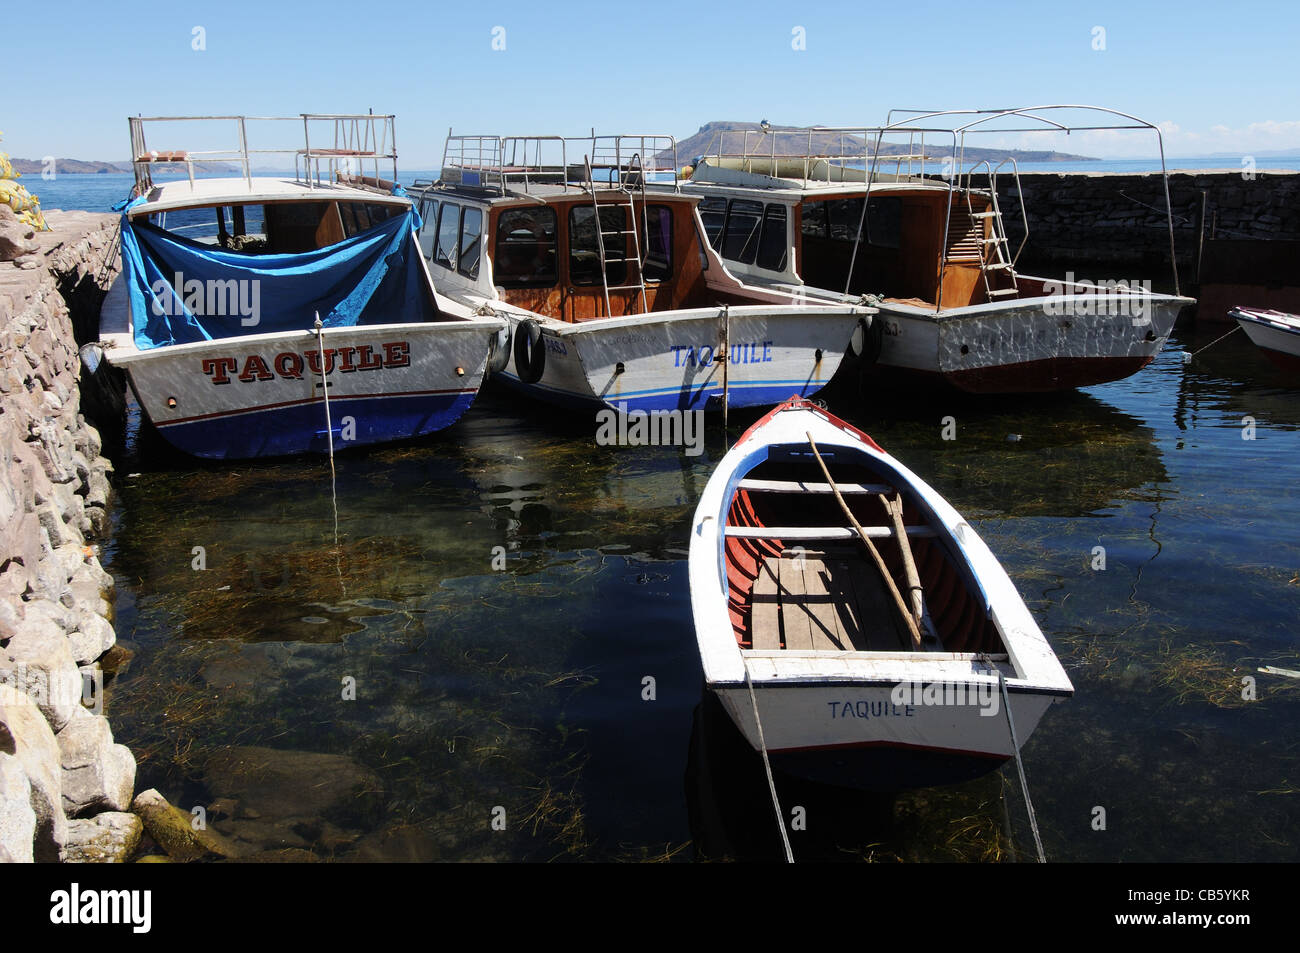 Bateaux dans le port de l'île de Taquile, Lac Titicaca, Pérou Banque D'Images